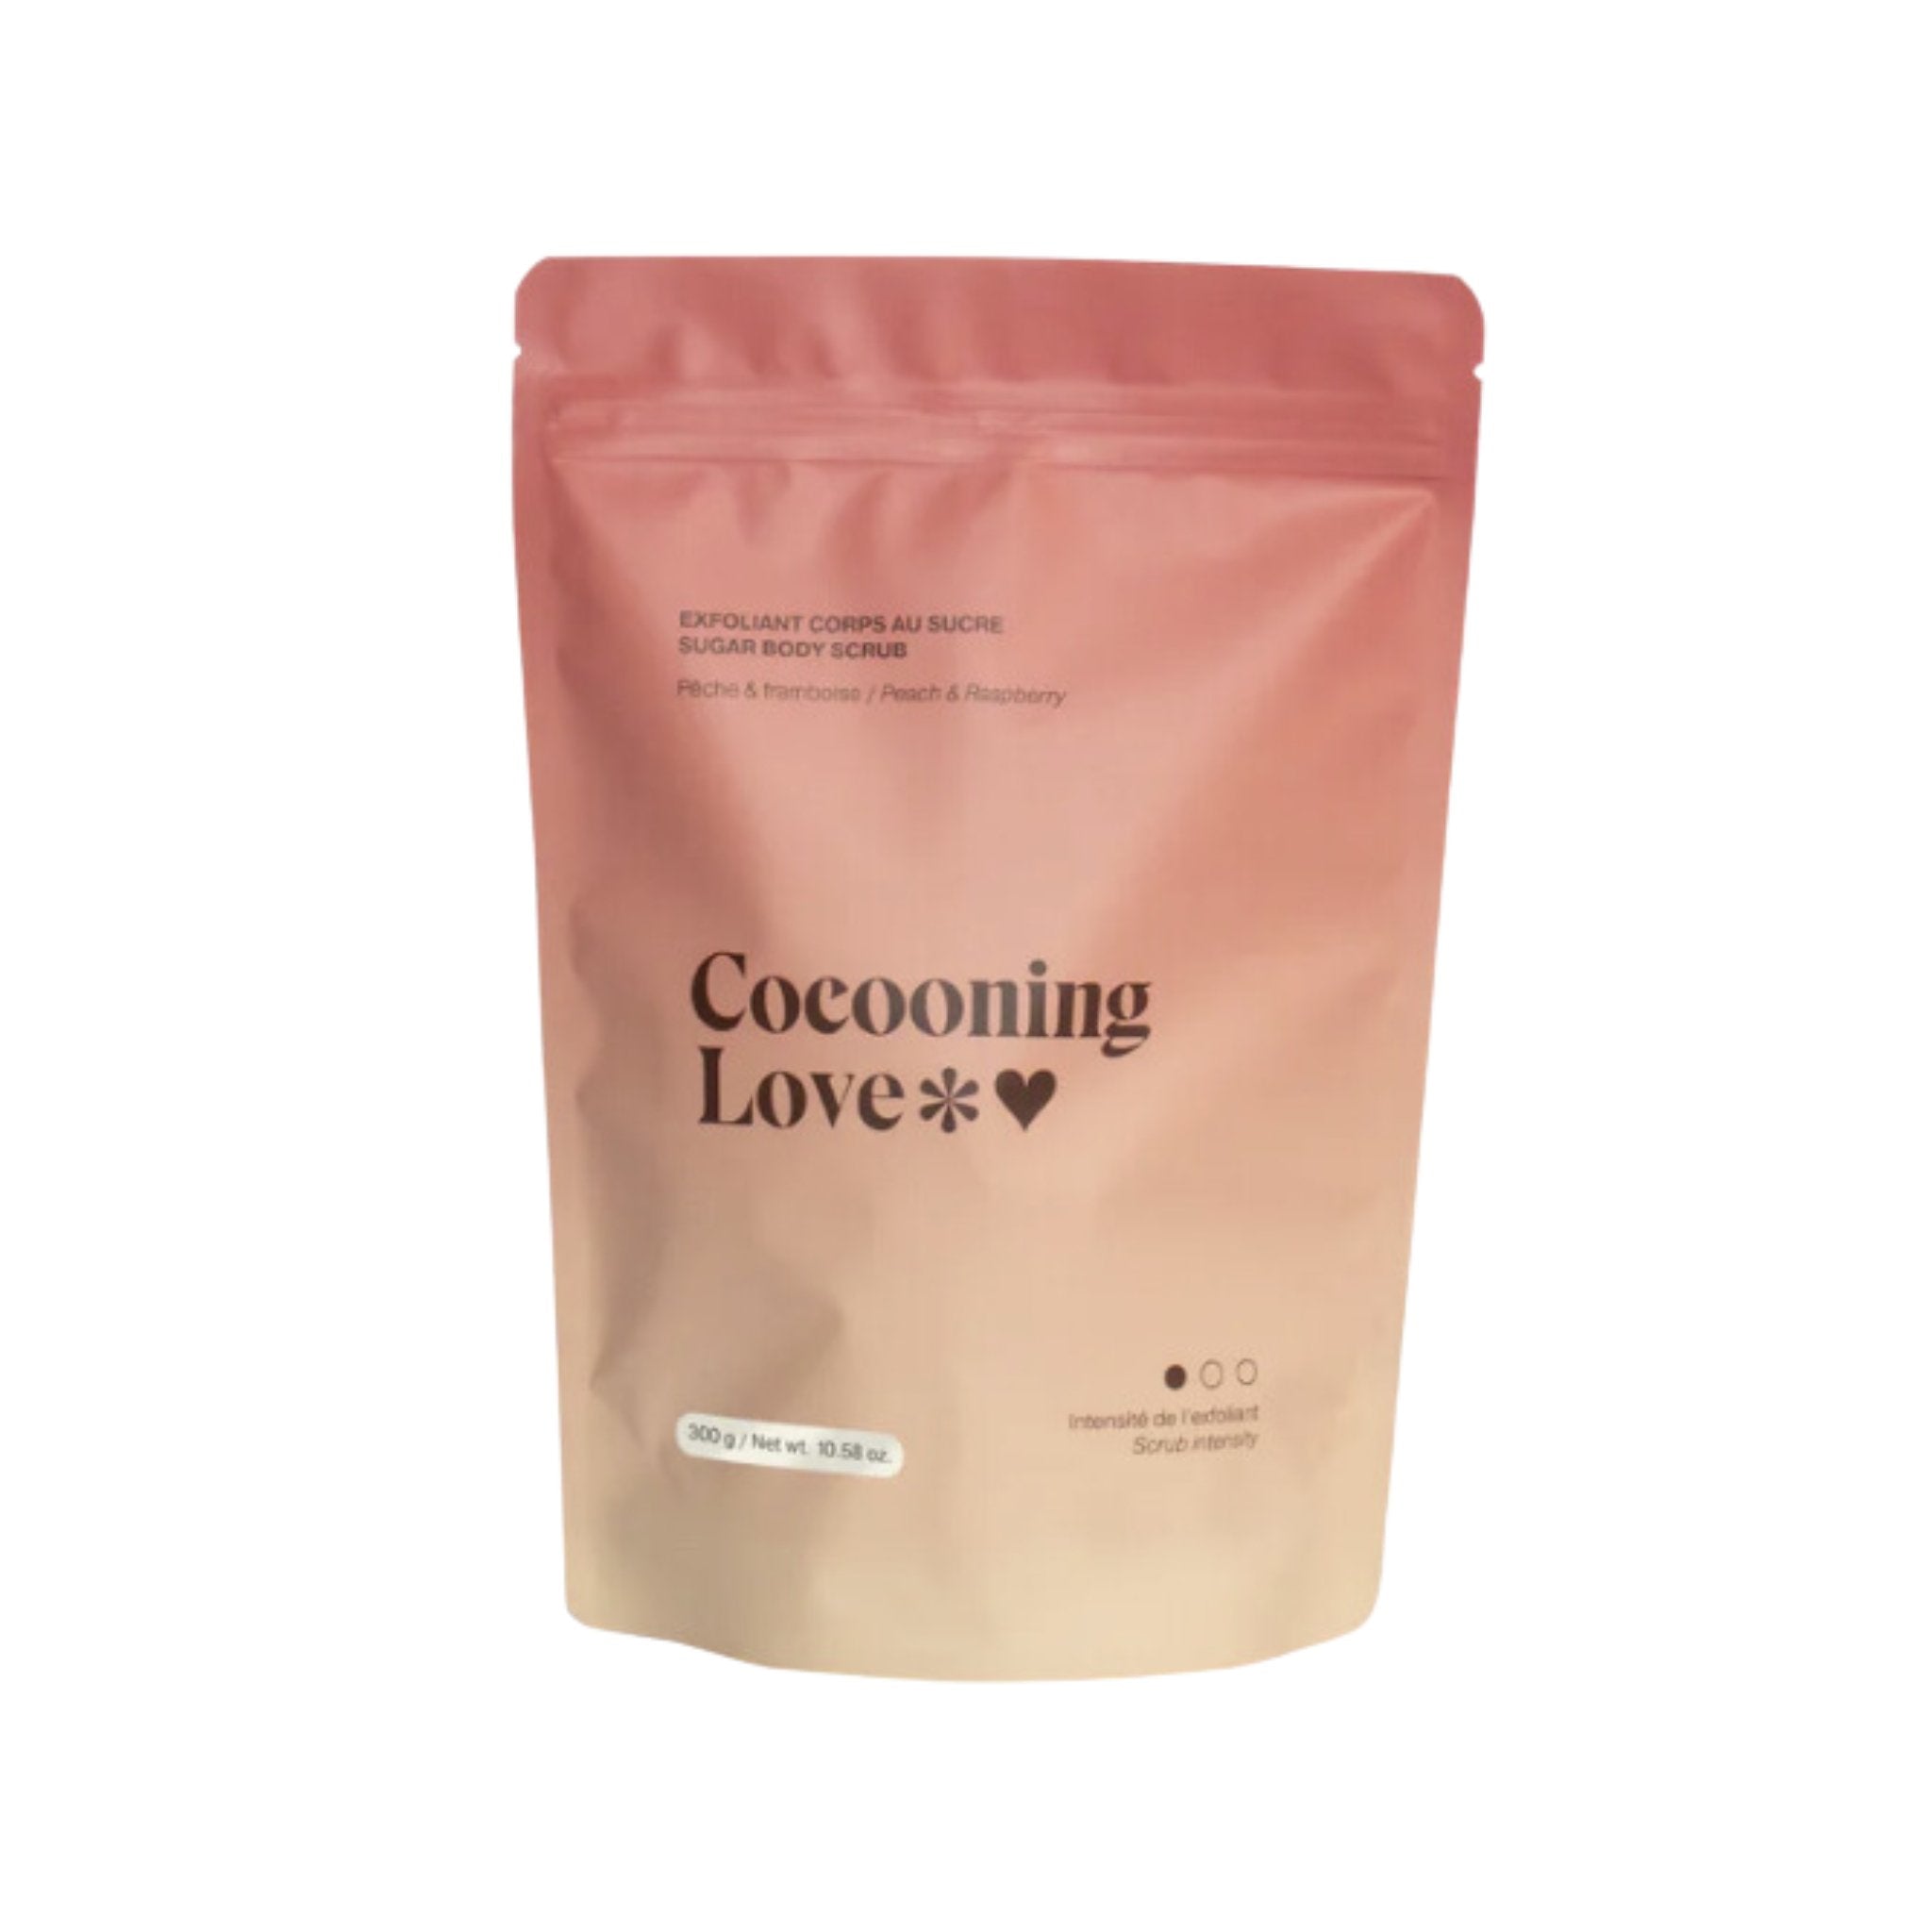 Cocooning Love. Exfoliant Corps au Sucre Pêche & Framboise - 300 gr - Concept C. Shop